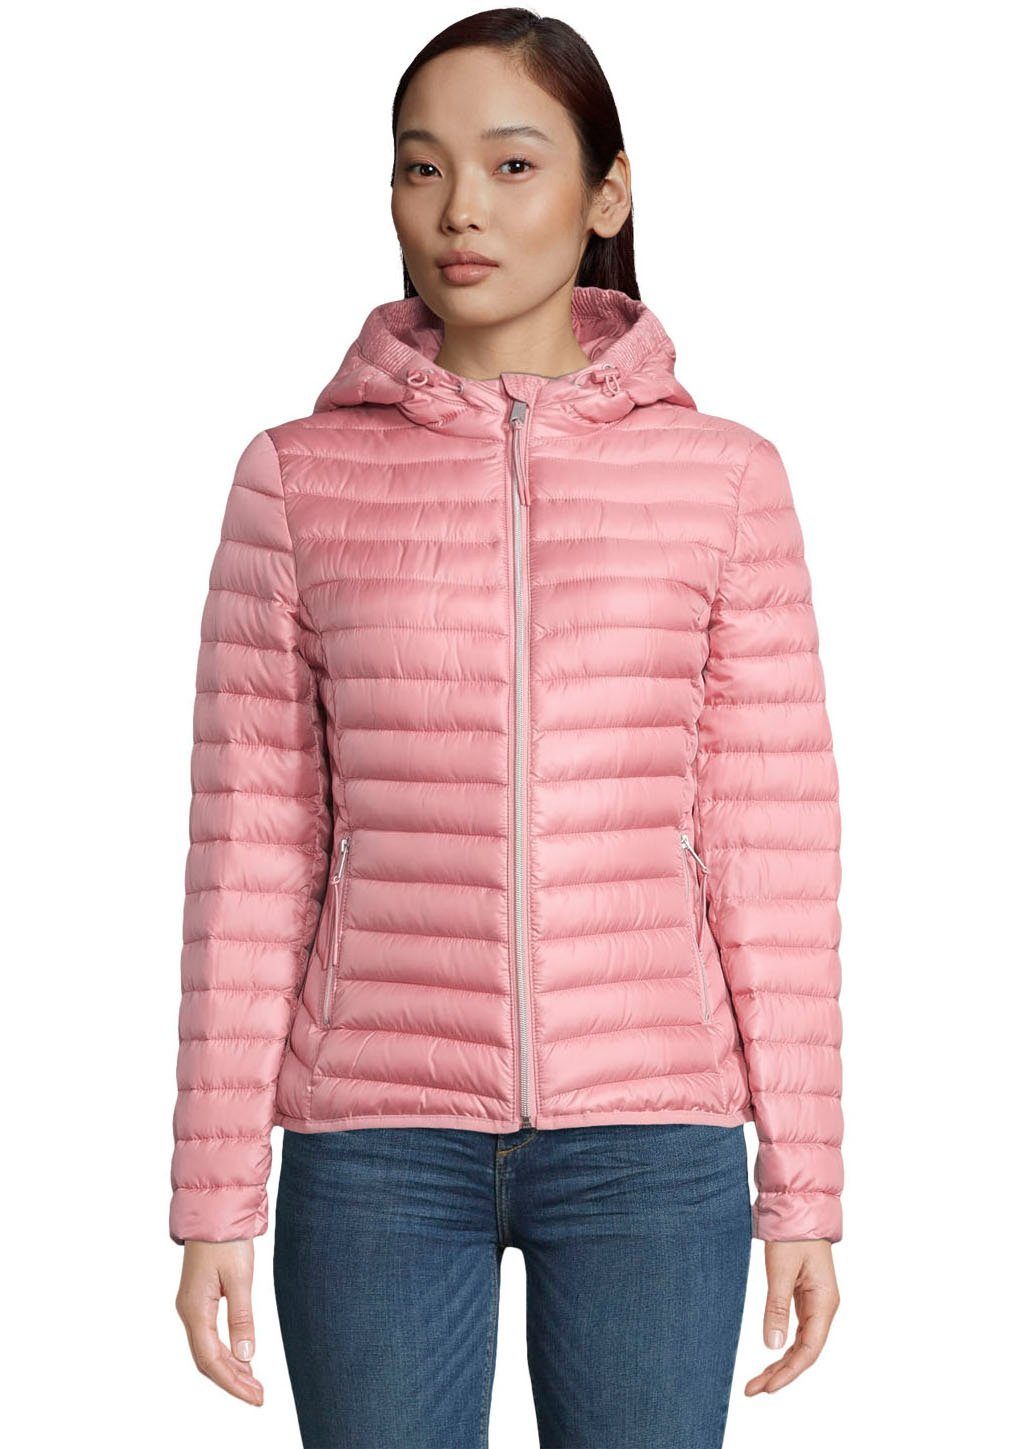 Steppjacken in rosa & pink online kaufen » Puffer Jacket | OTTO